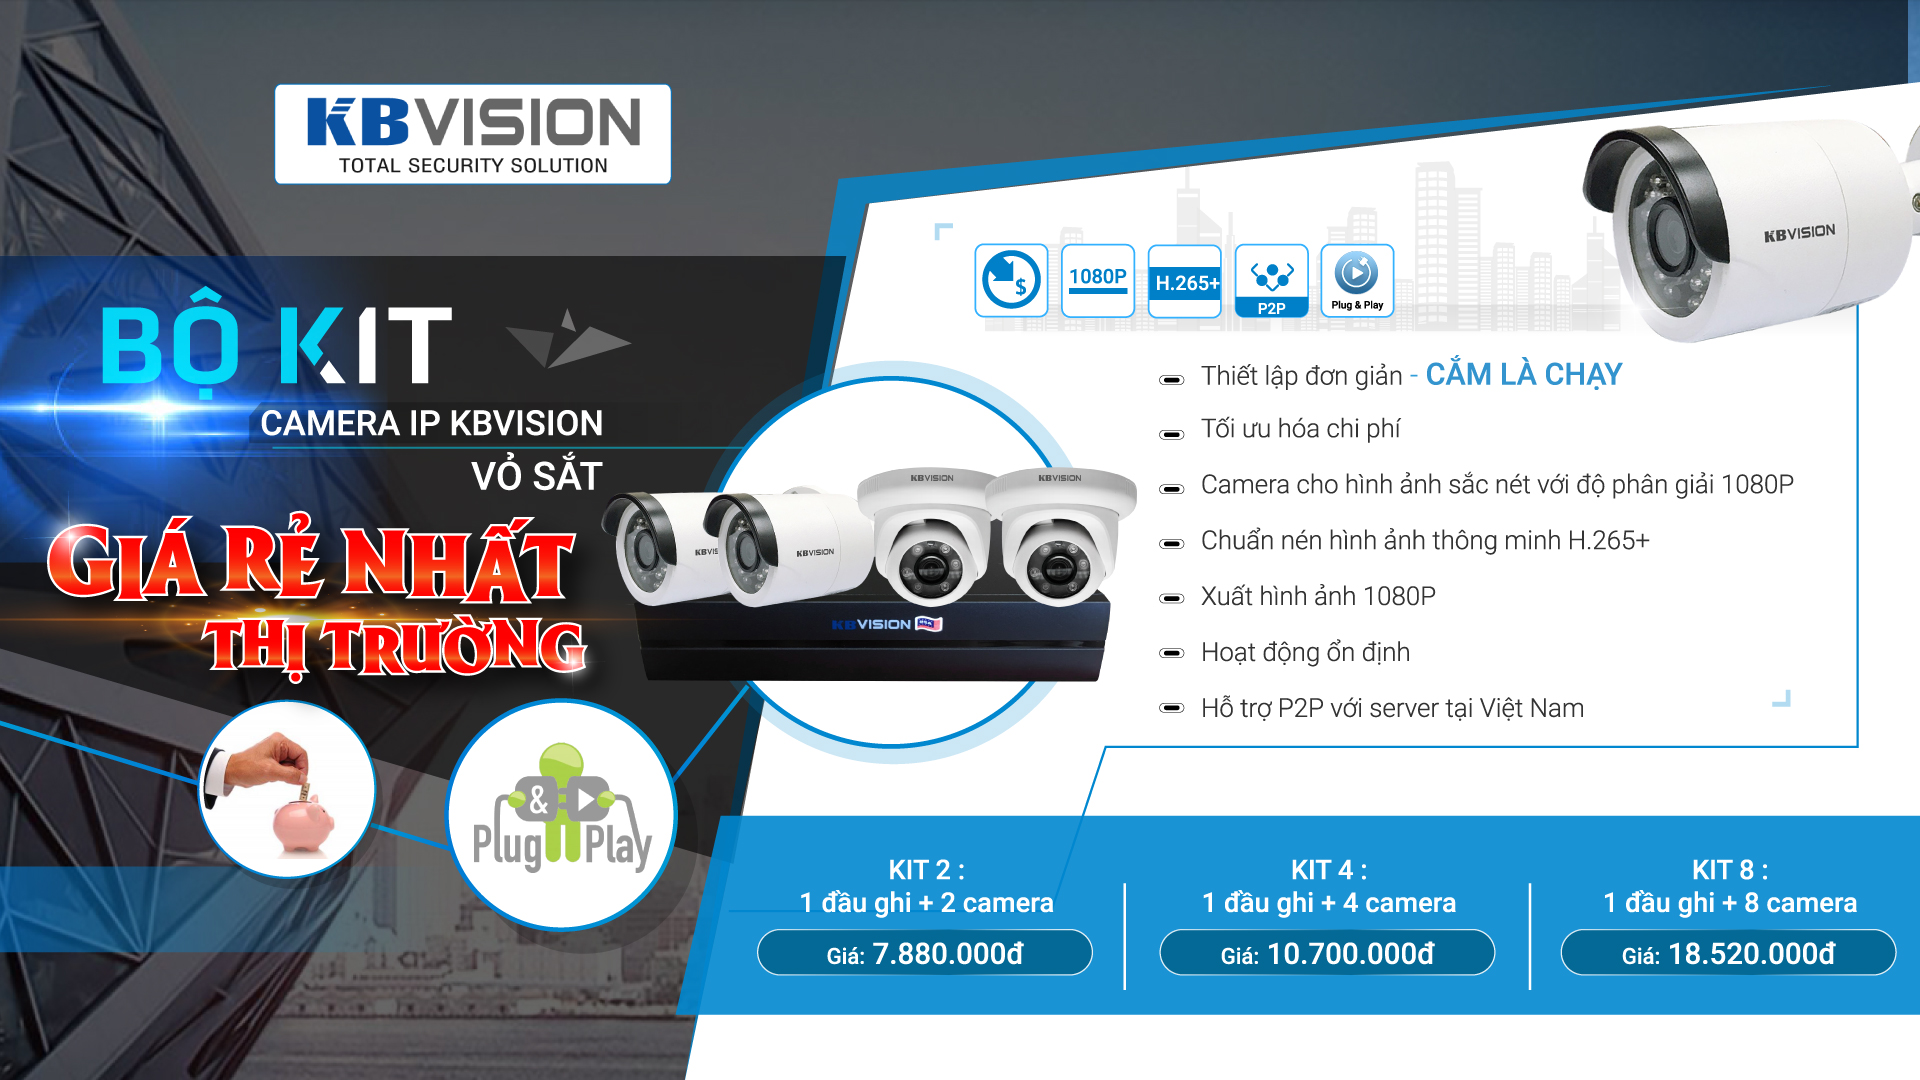 Trọn bộ camera KBVISION Kit 2 , kit 4, kit 8